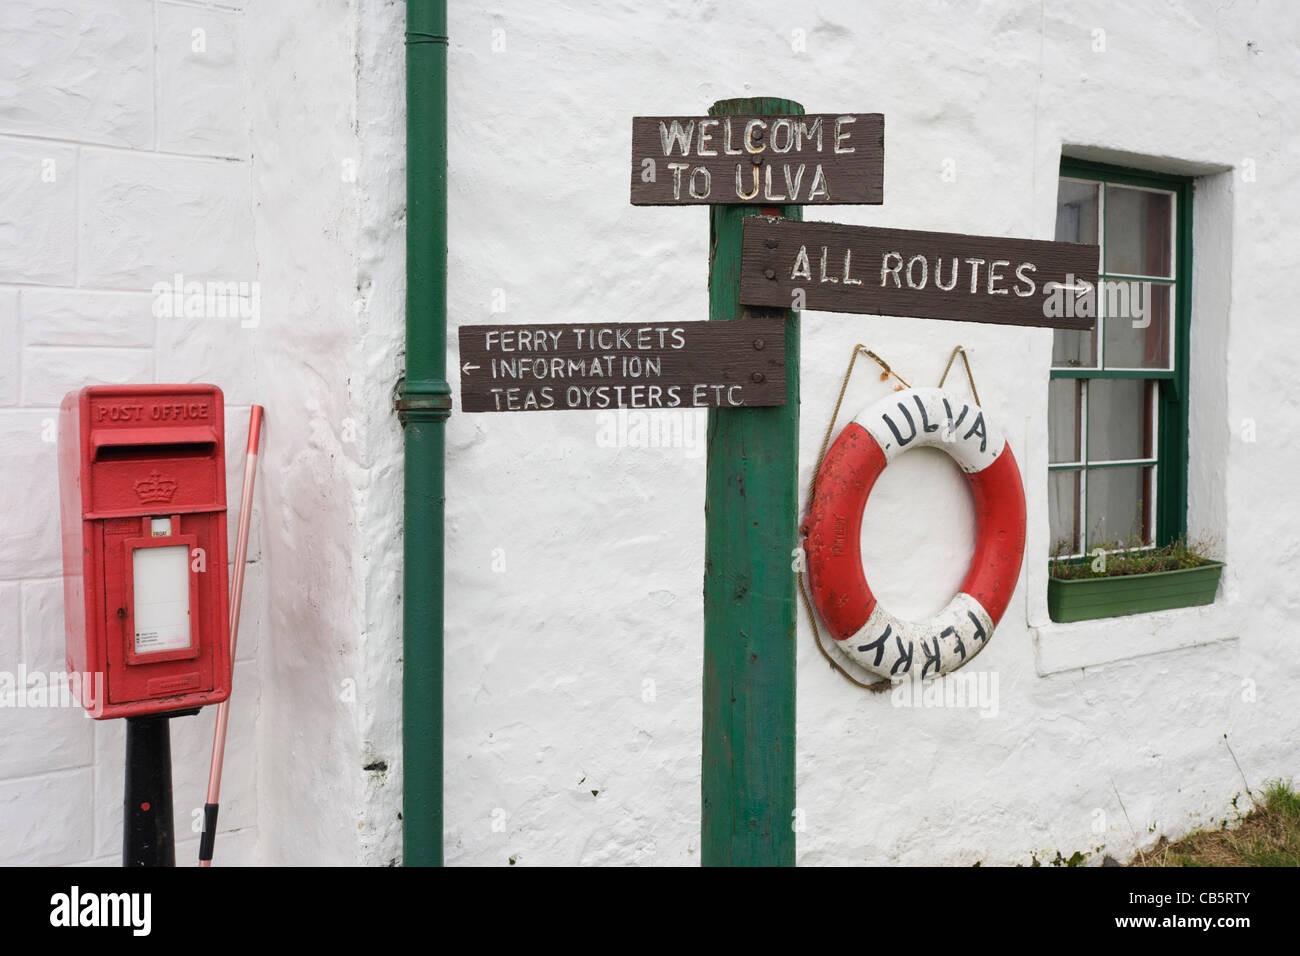 Dettaglio delle indicazioni per itinerari a piedi intorno all'Isola di Ulva, Isle of Mull, Scozia. Foto Stock